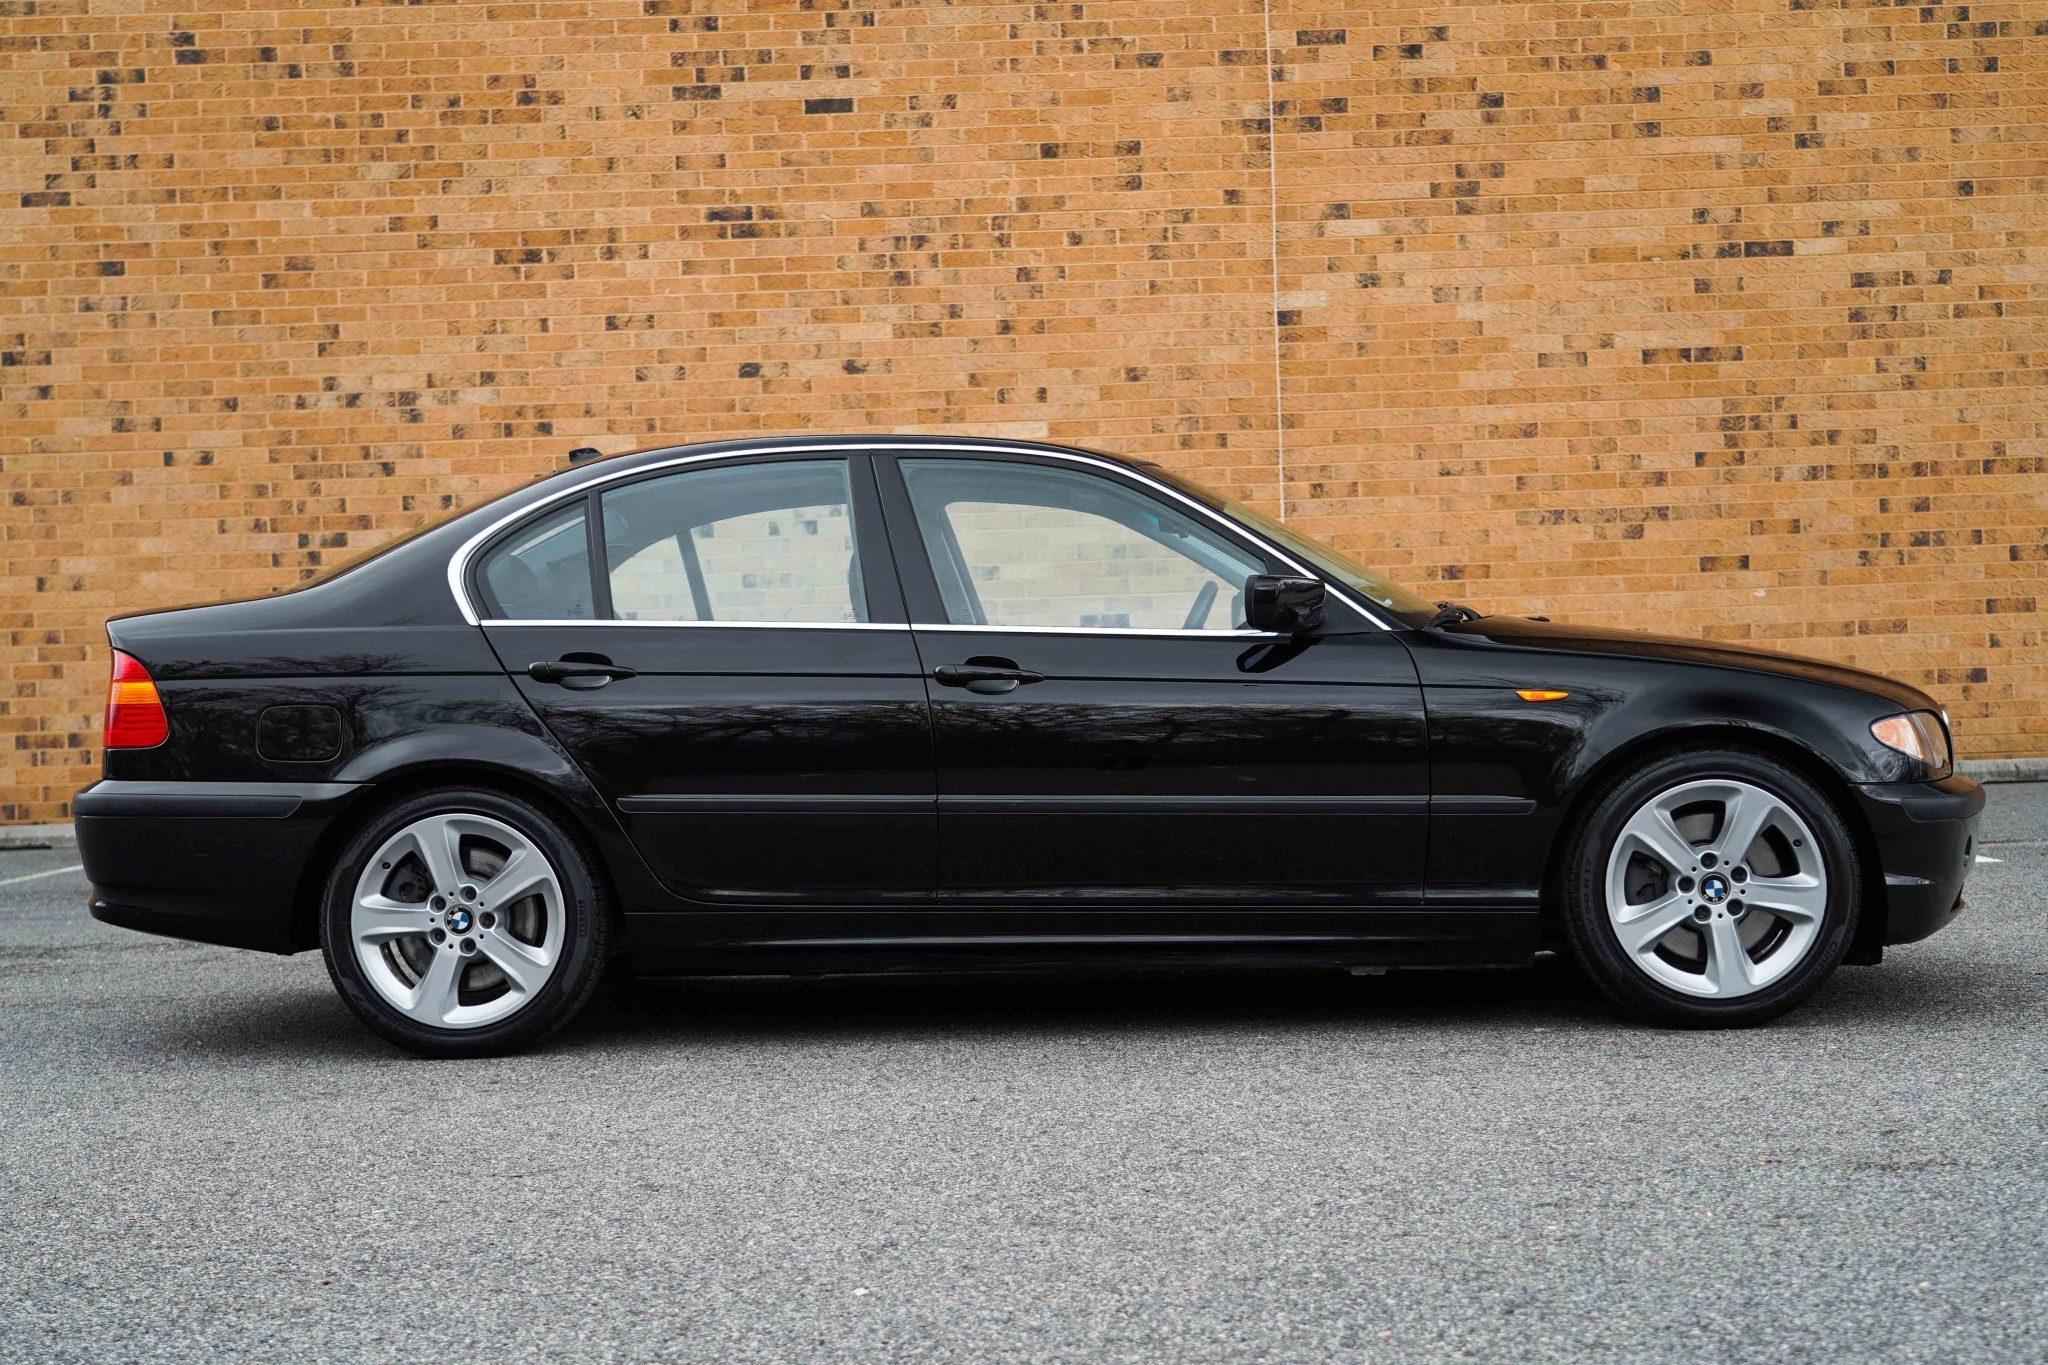 2005 BMW 330i